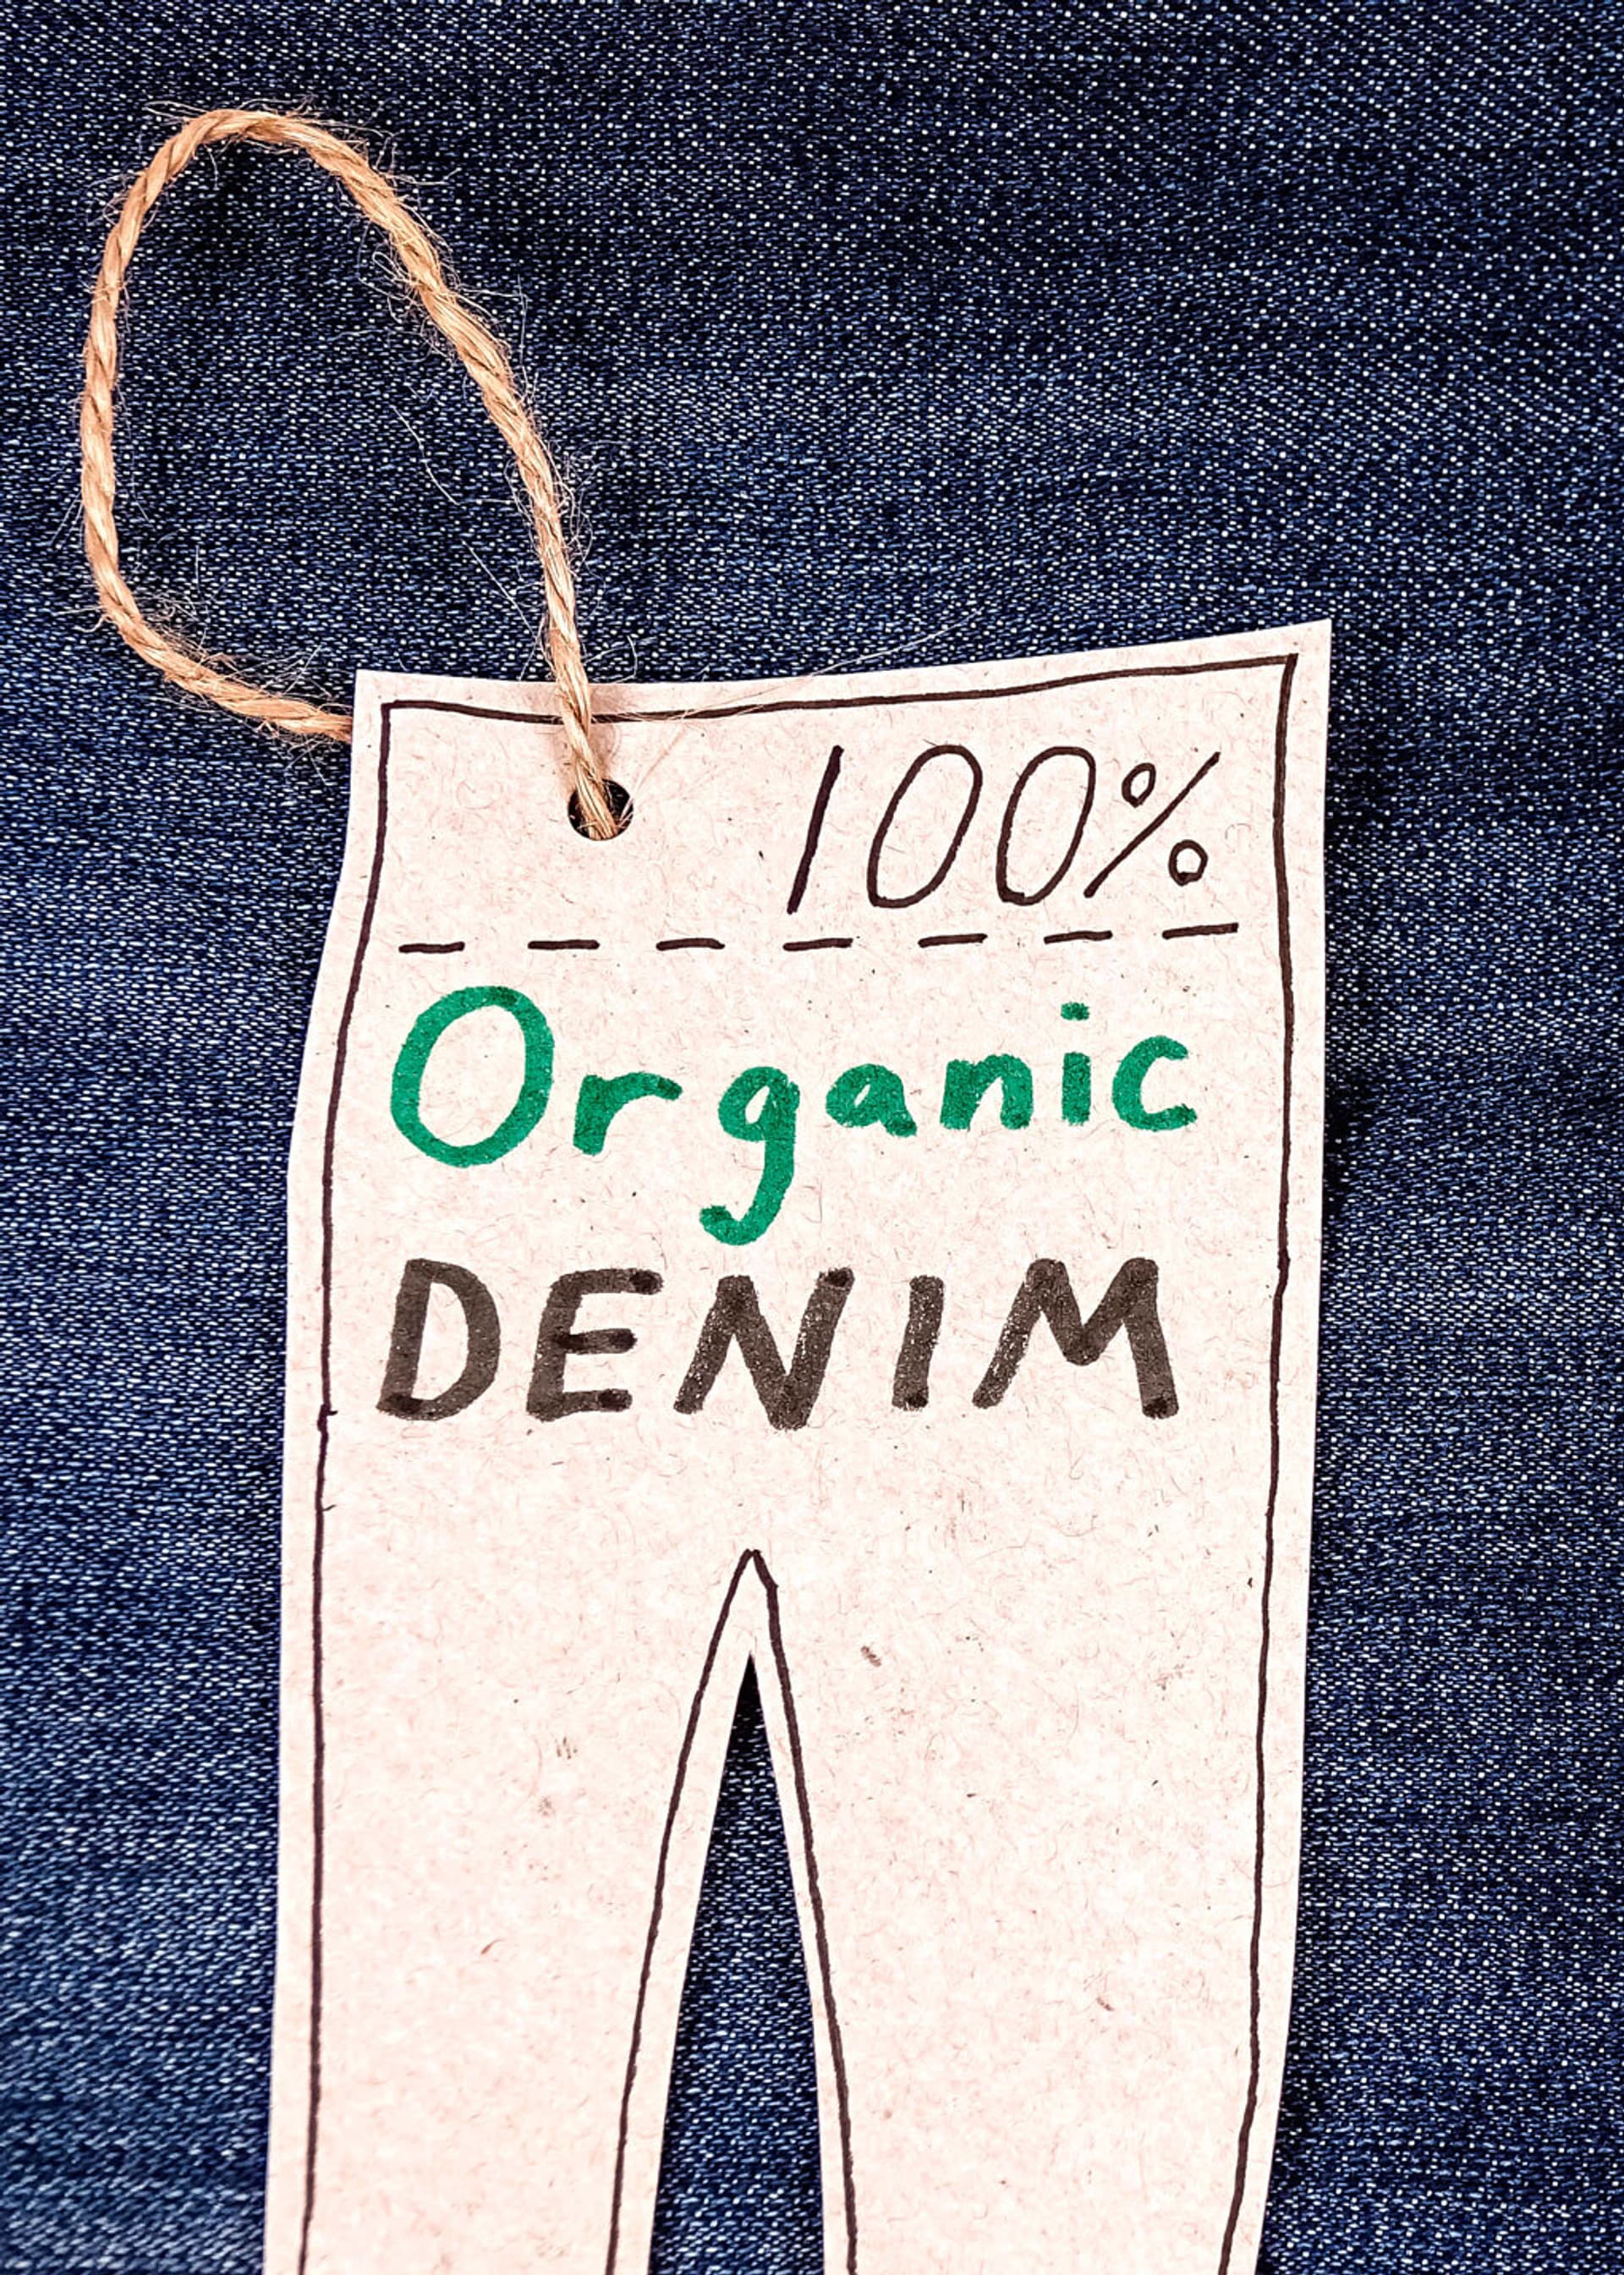 100% organic denim label